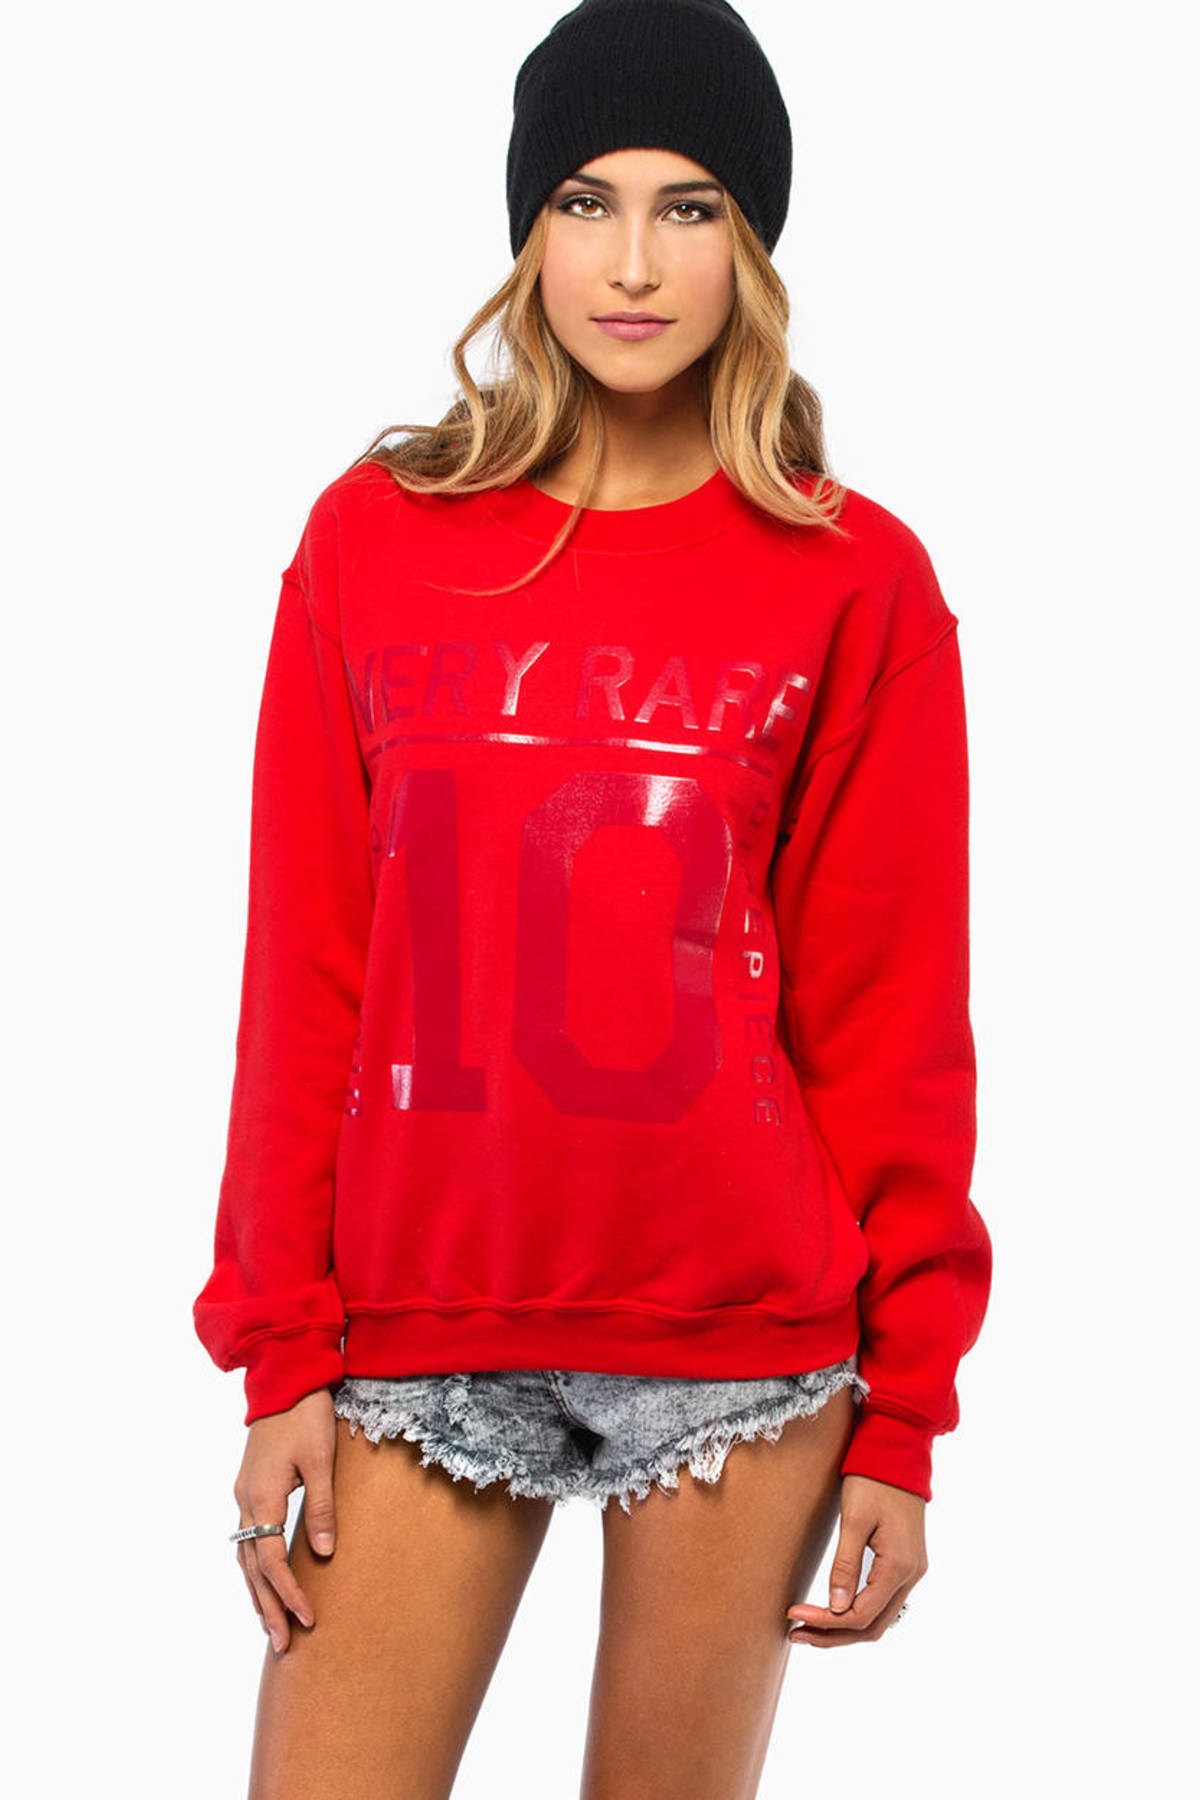 Very Rare Sweatshirt in Red - $46 | Tobi US